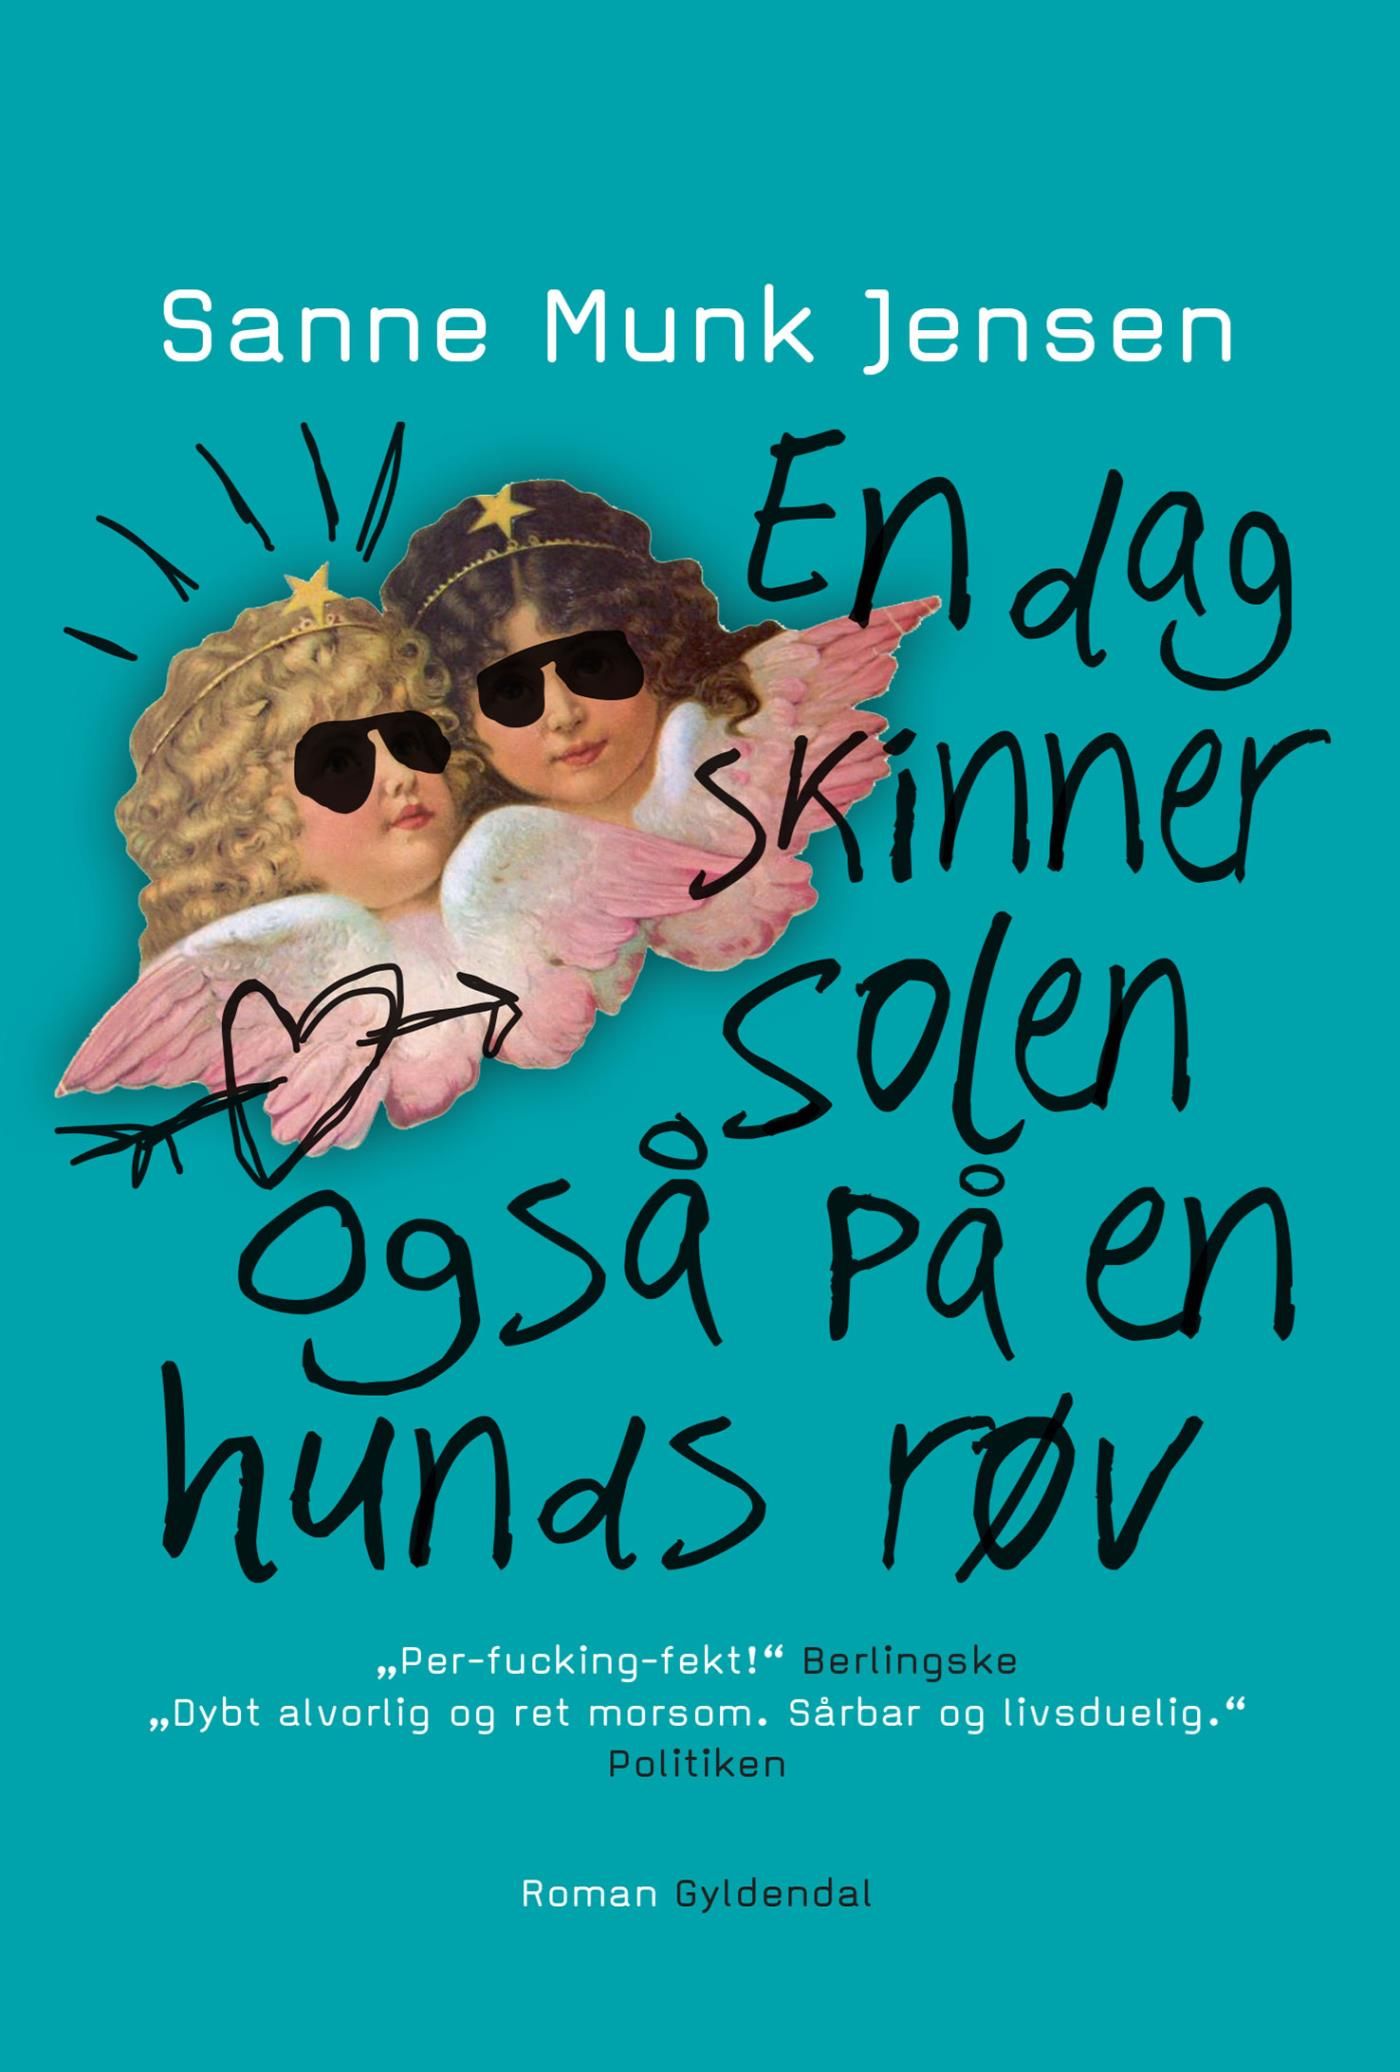 En dag skinner solen også på en hunds røv, e-bog af Sanne Munk Jensen